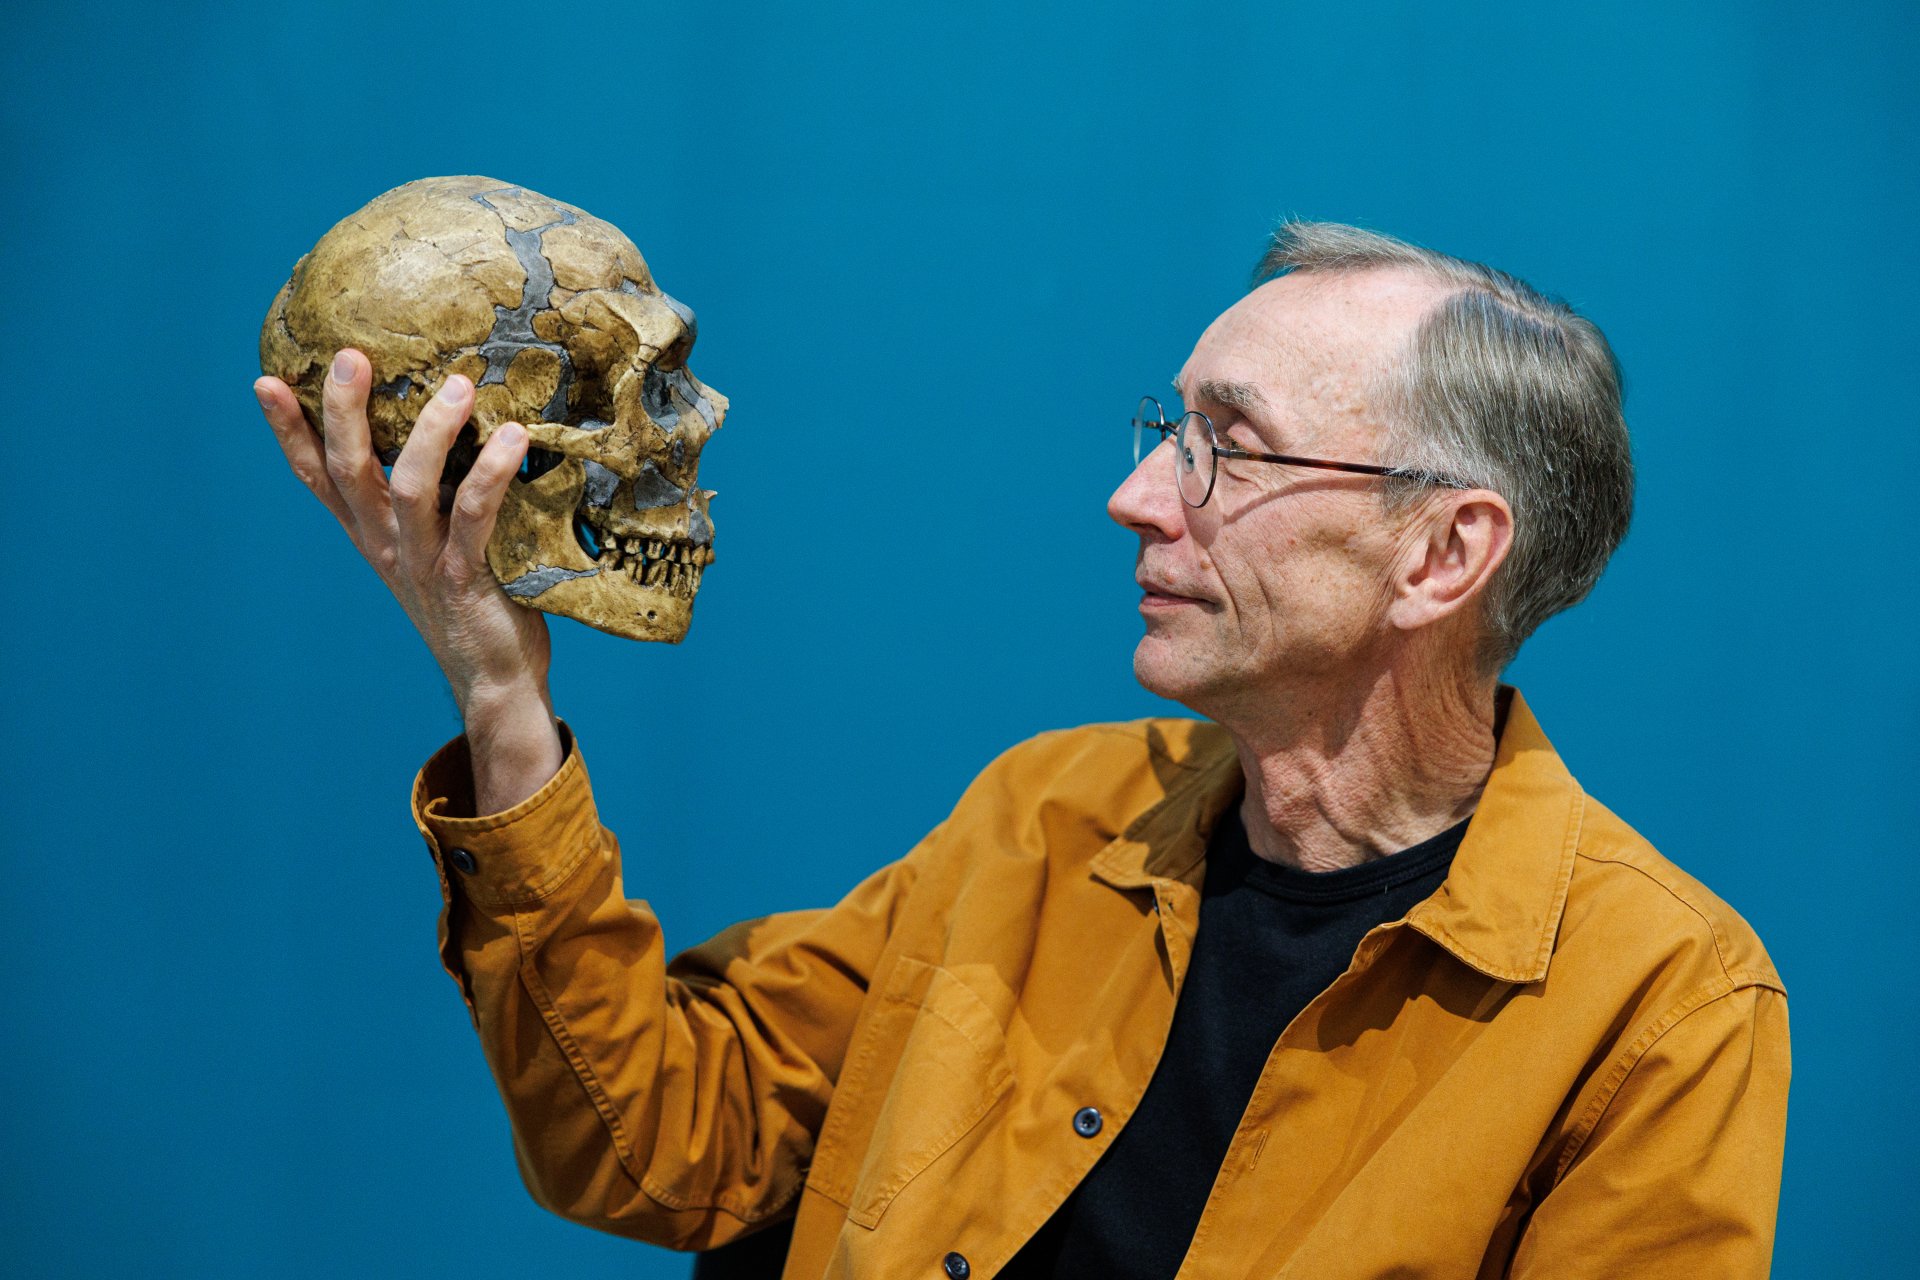 Сванте Паабо, директор на Института за еволюционна антропология "Макс Планк", със скелет на неандерталец след пресконференция, след като спечели Нобеловата награда за физиология и медицина 